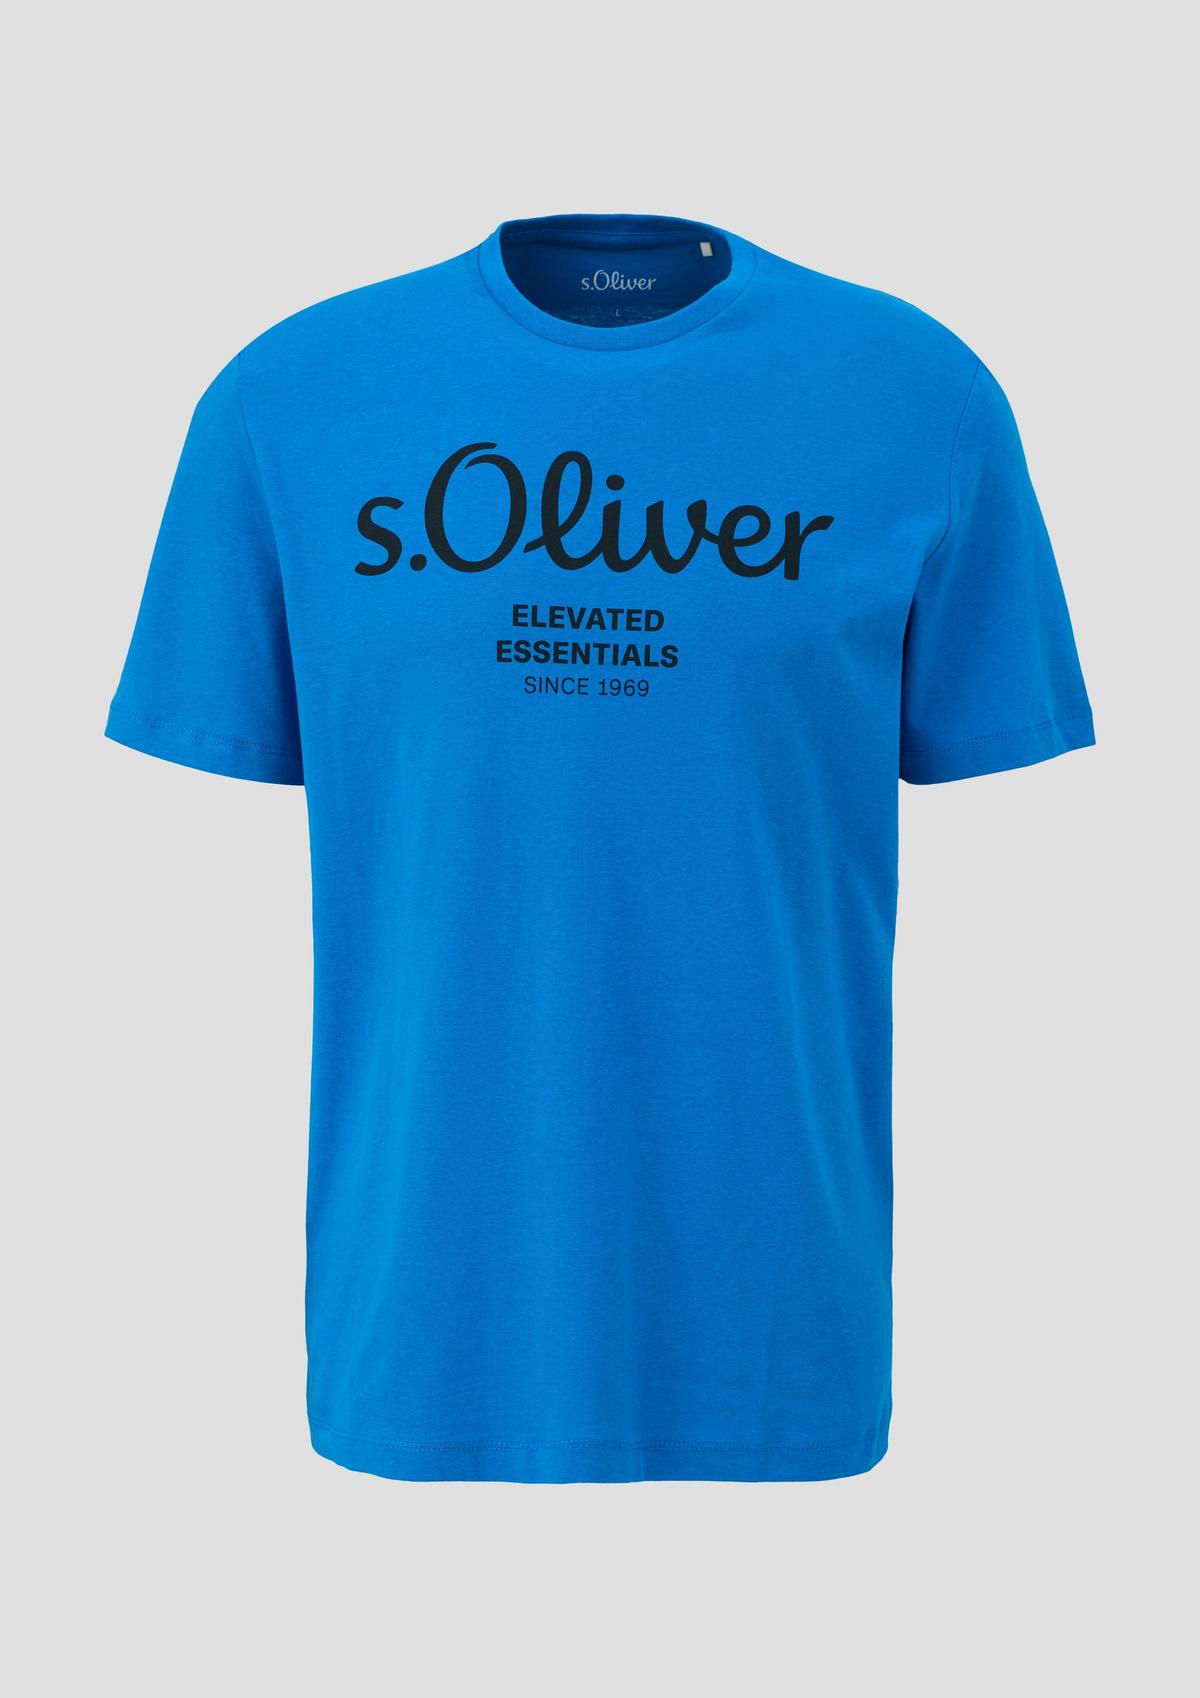 s.Oliver s.Oliver Print-Shirt